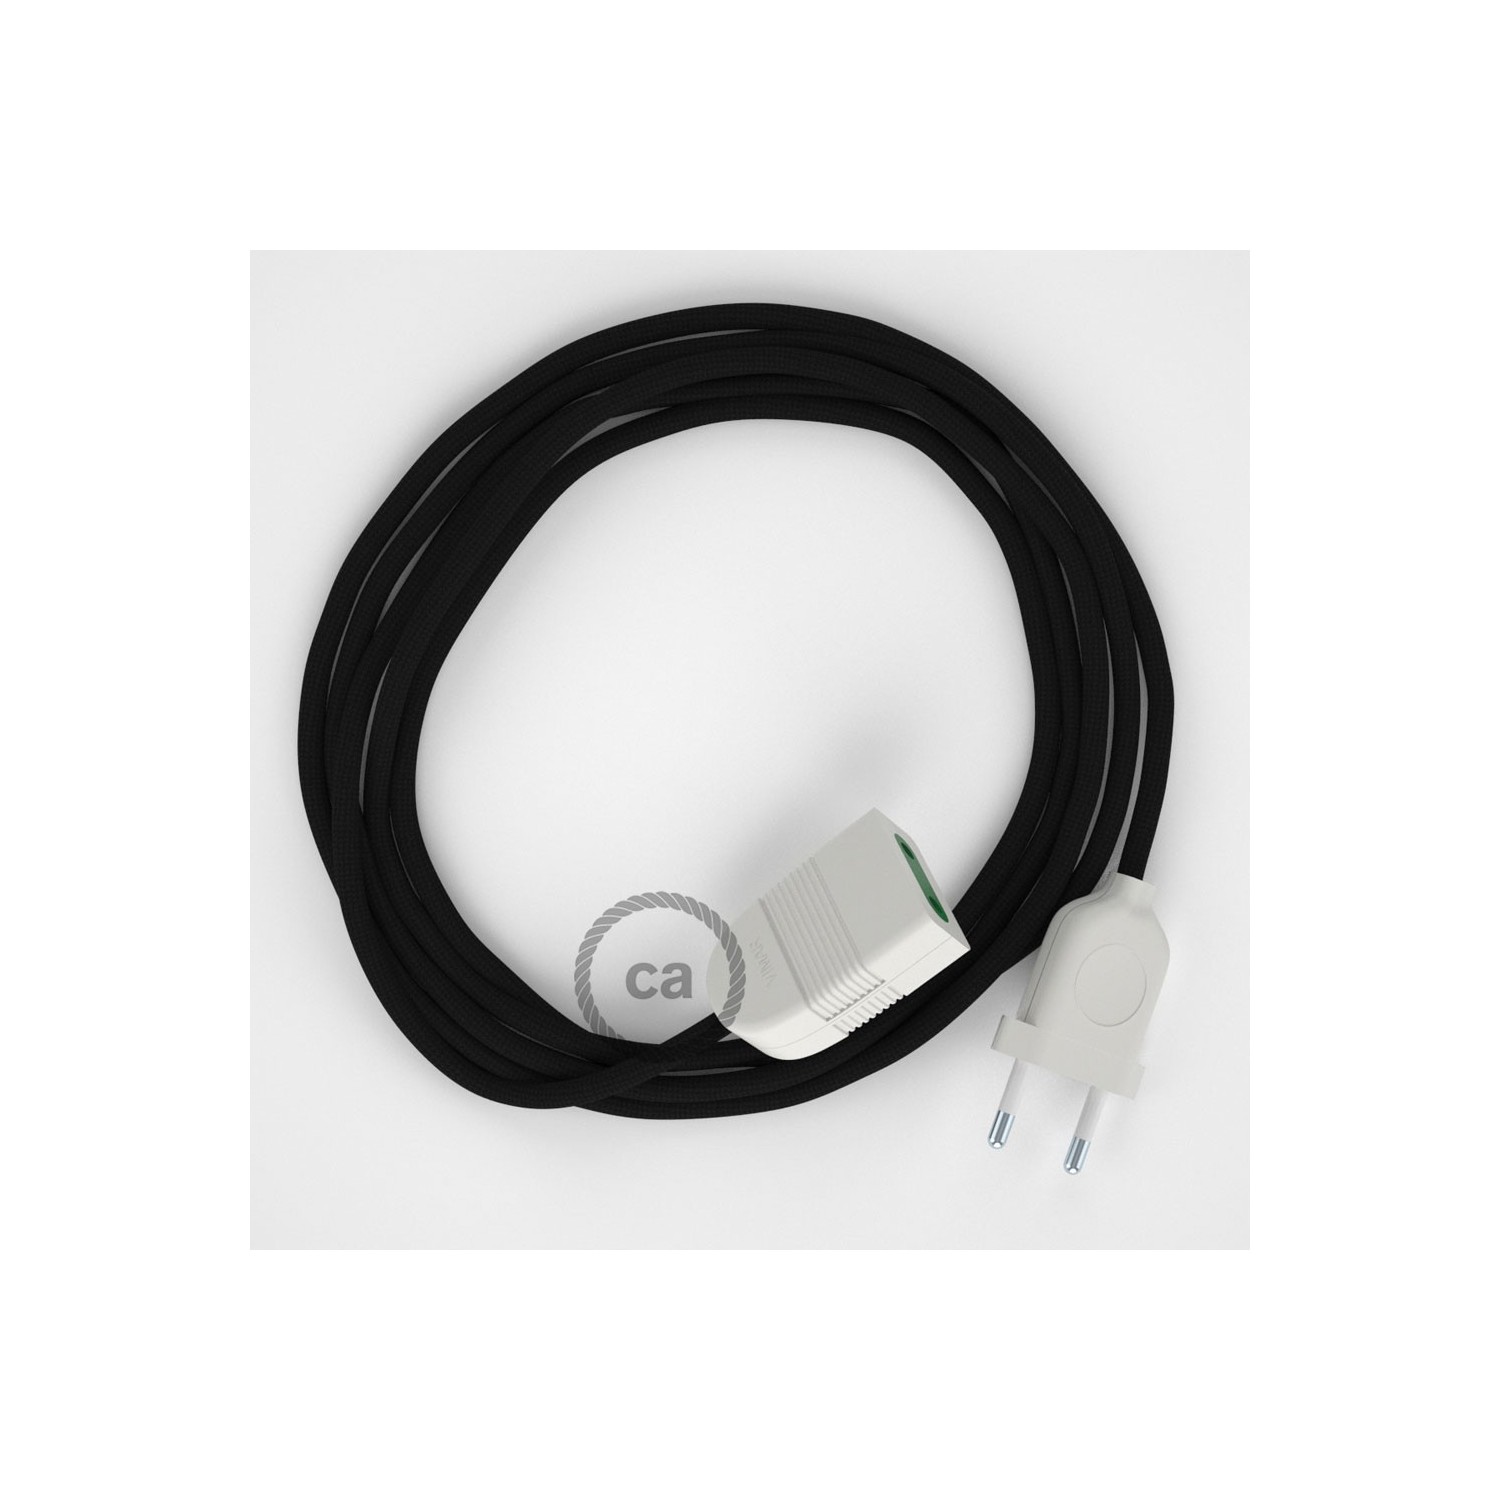 Rallonge électrique avec câble textile RM04 Effet Soie Noir 2P 10A Made in Italy.